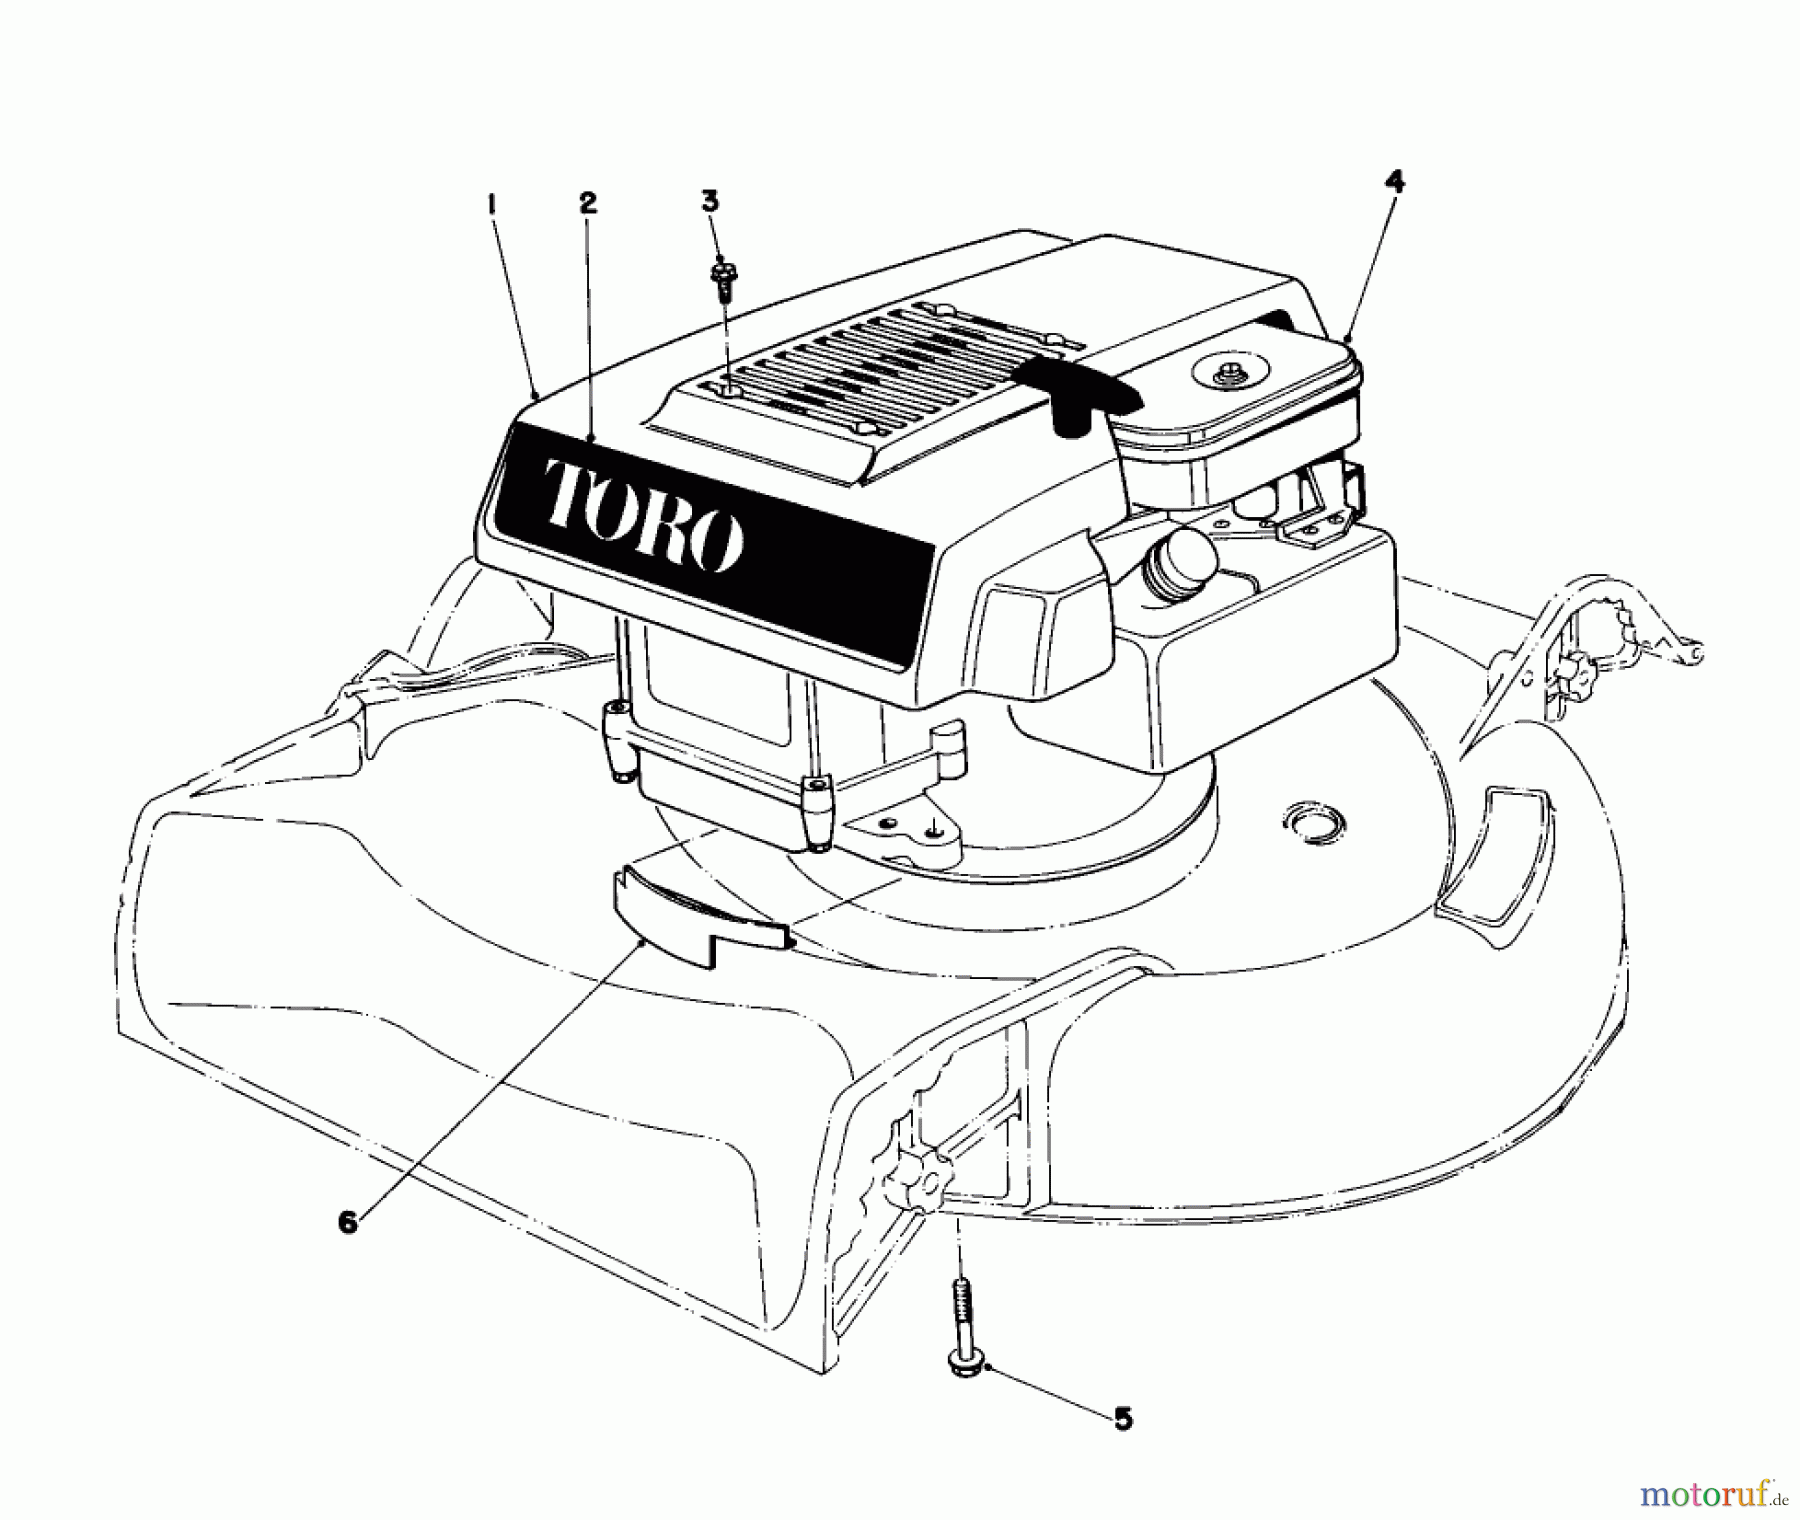  Toro Neu Mowers, Walk-Behind Seite 1 16350 - Toro Lawnmower, 1981 (1000001-1999999) ENGINE ASSEMBLY